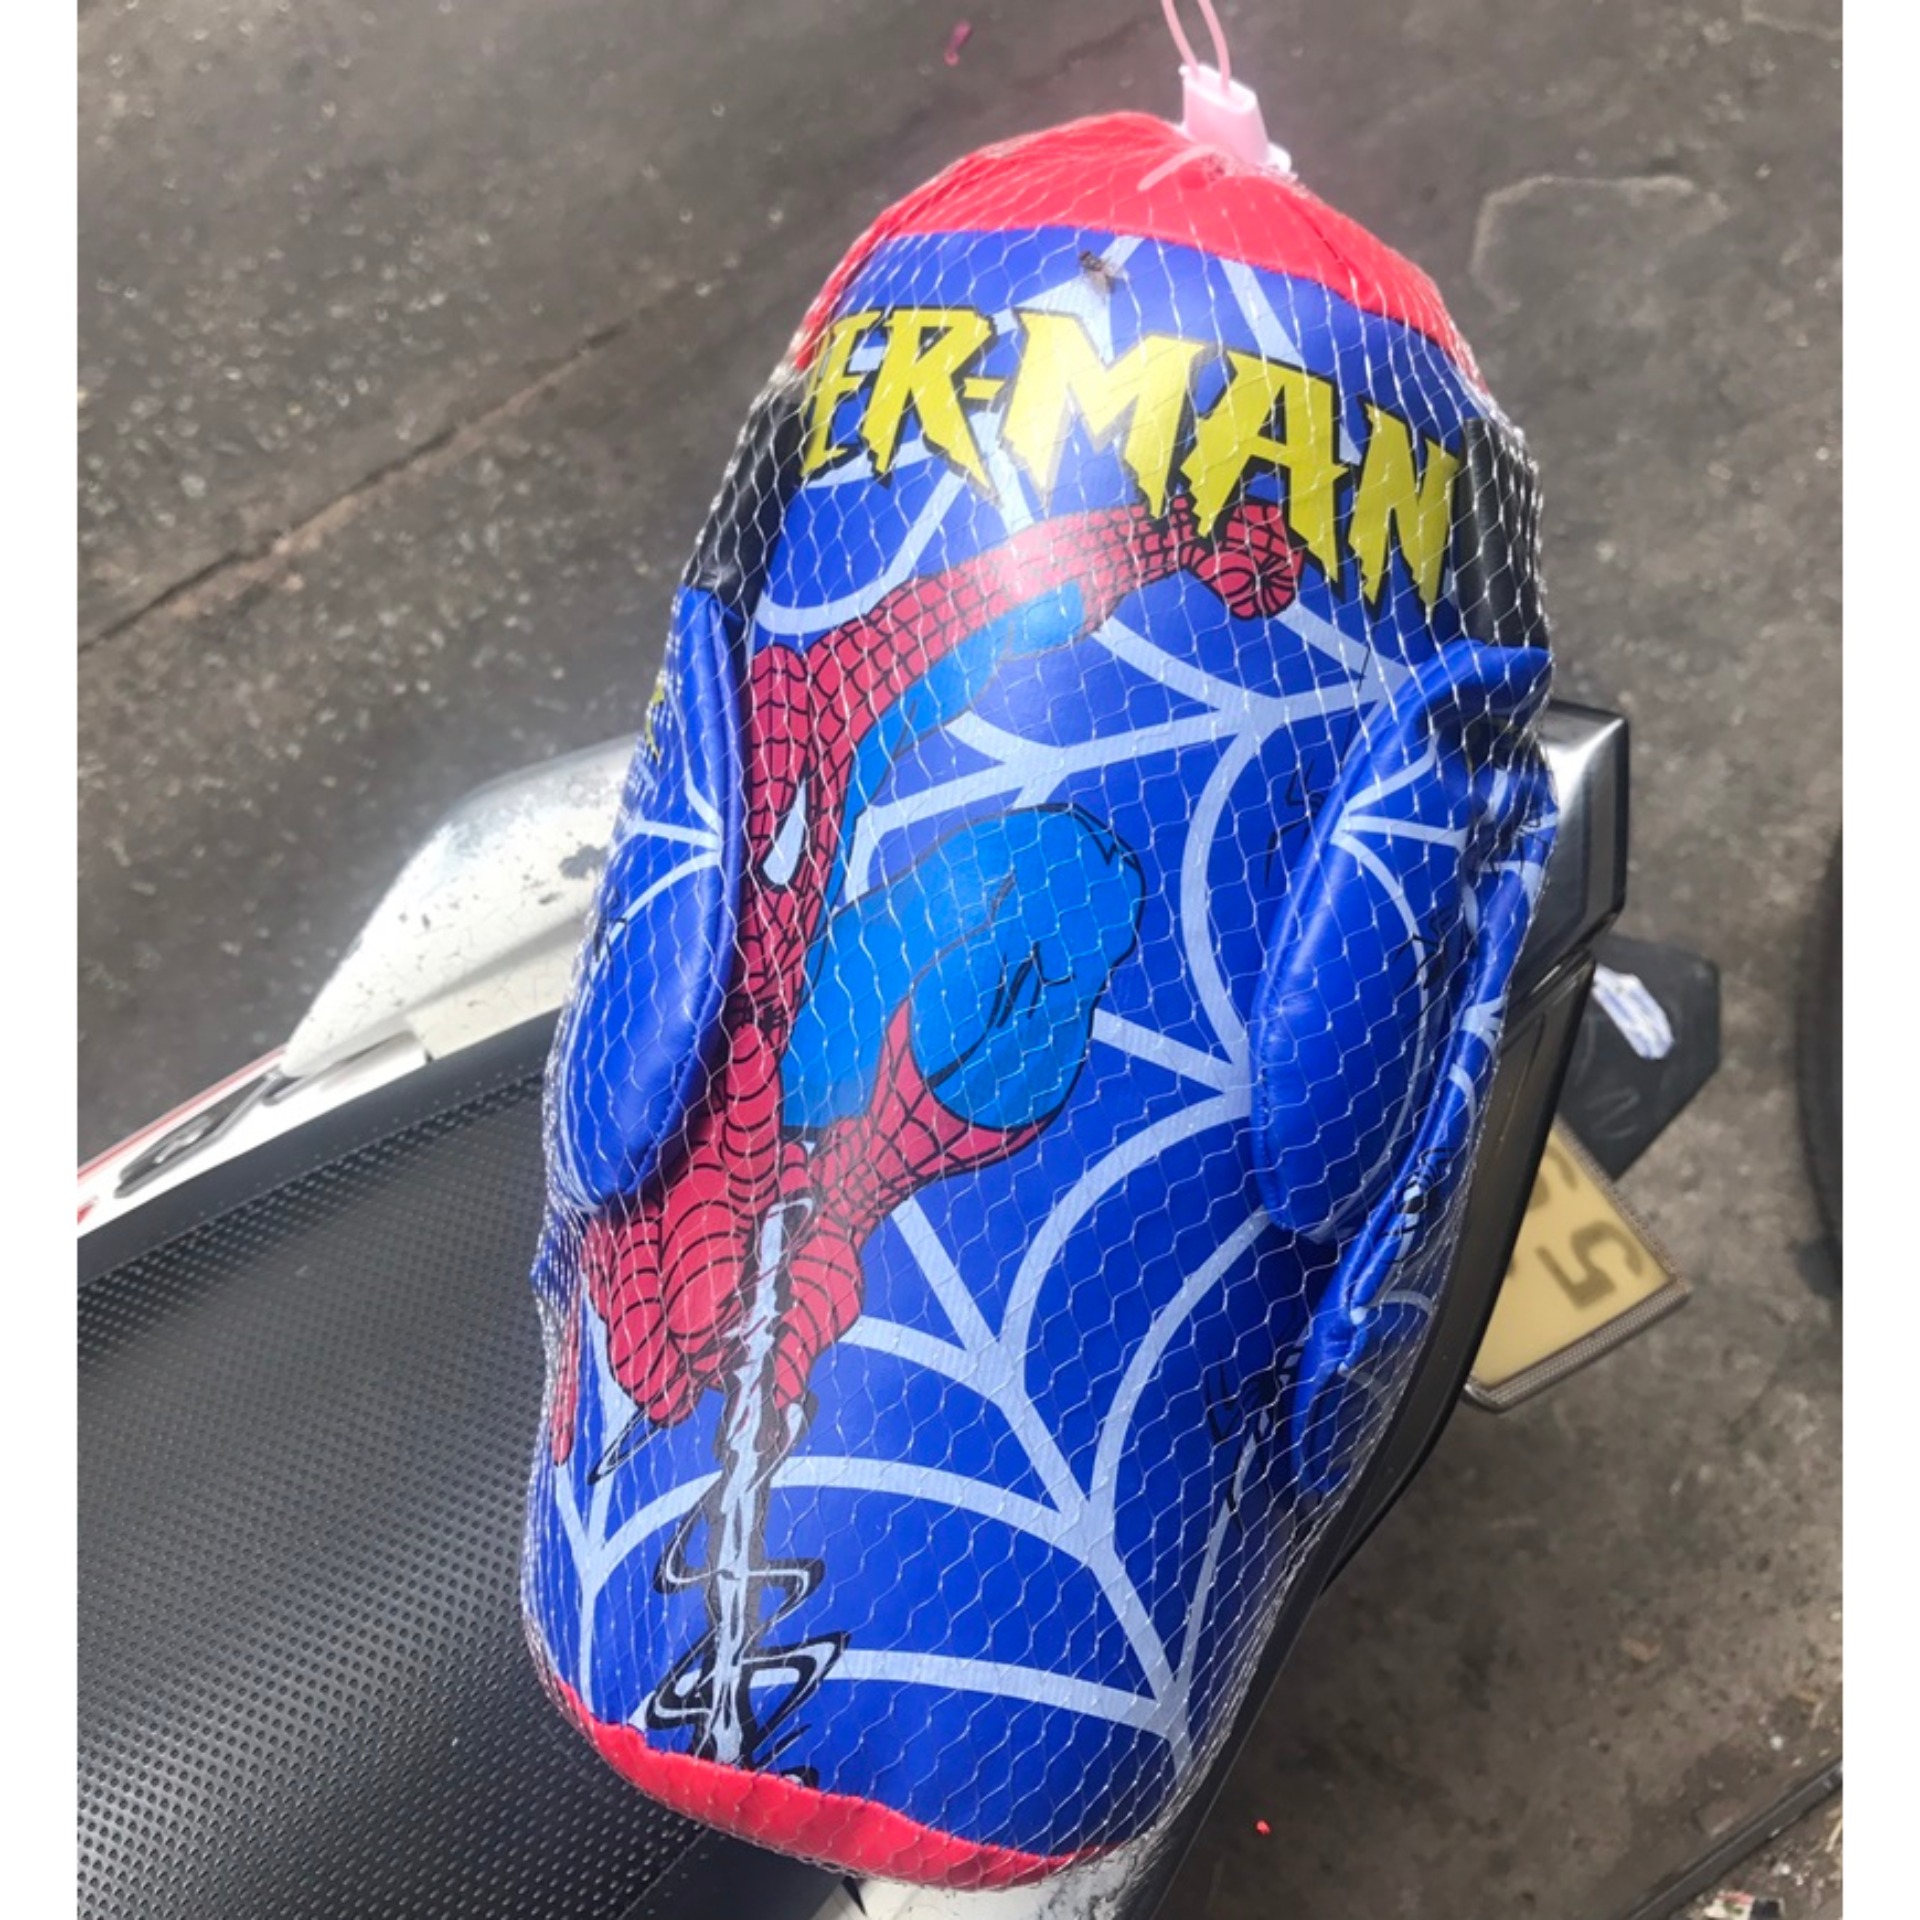 bộ đồ chơi đấm boxing hình người nhện spiderman kèm 2 găng tay làm bằng chất liệu da mềm và bông gòn an toàn cho bé khi chơi ( size trung ) - liclac 4